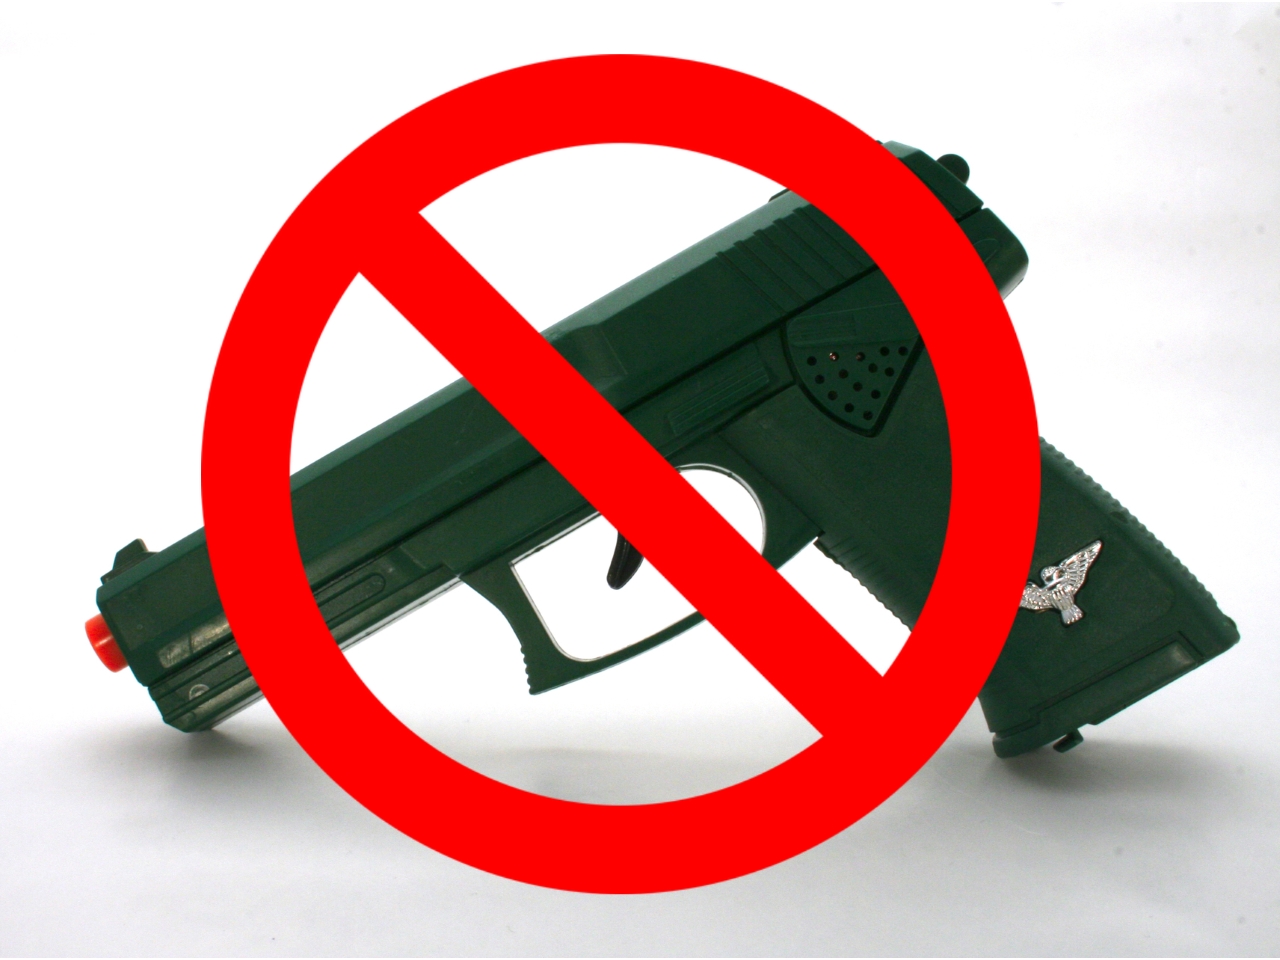 To Ban or Not Ban Cosplay Guns